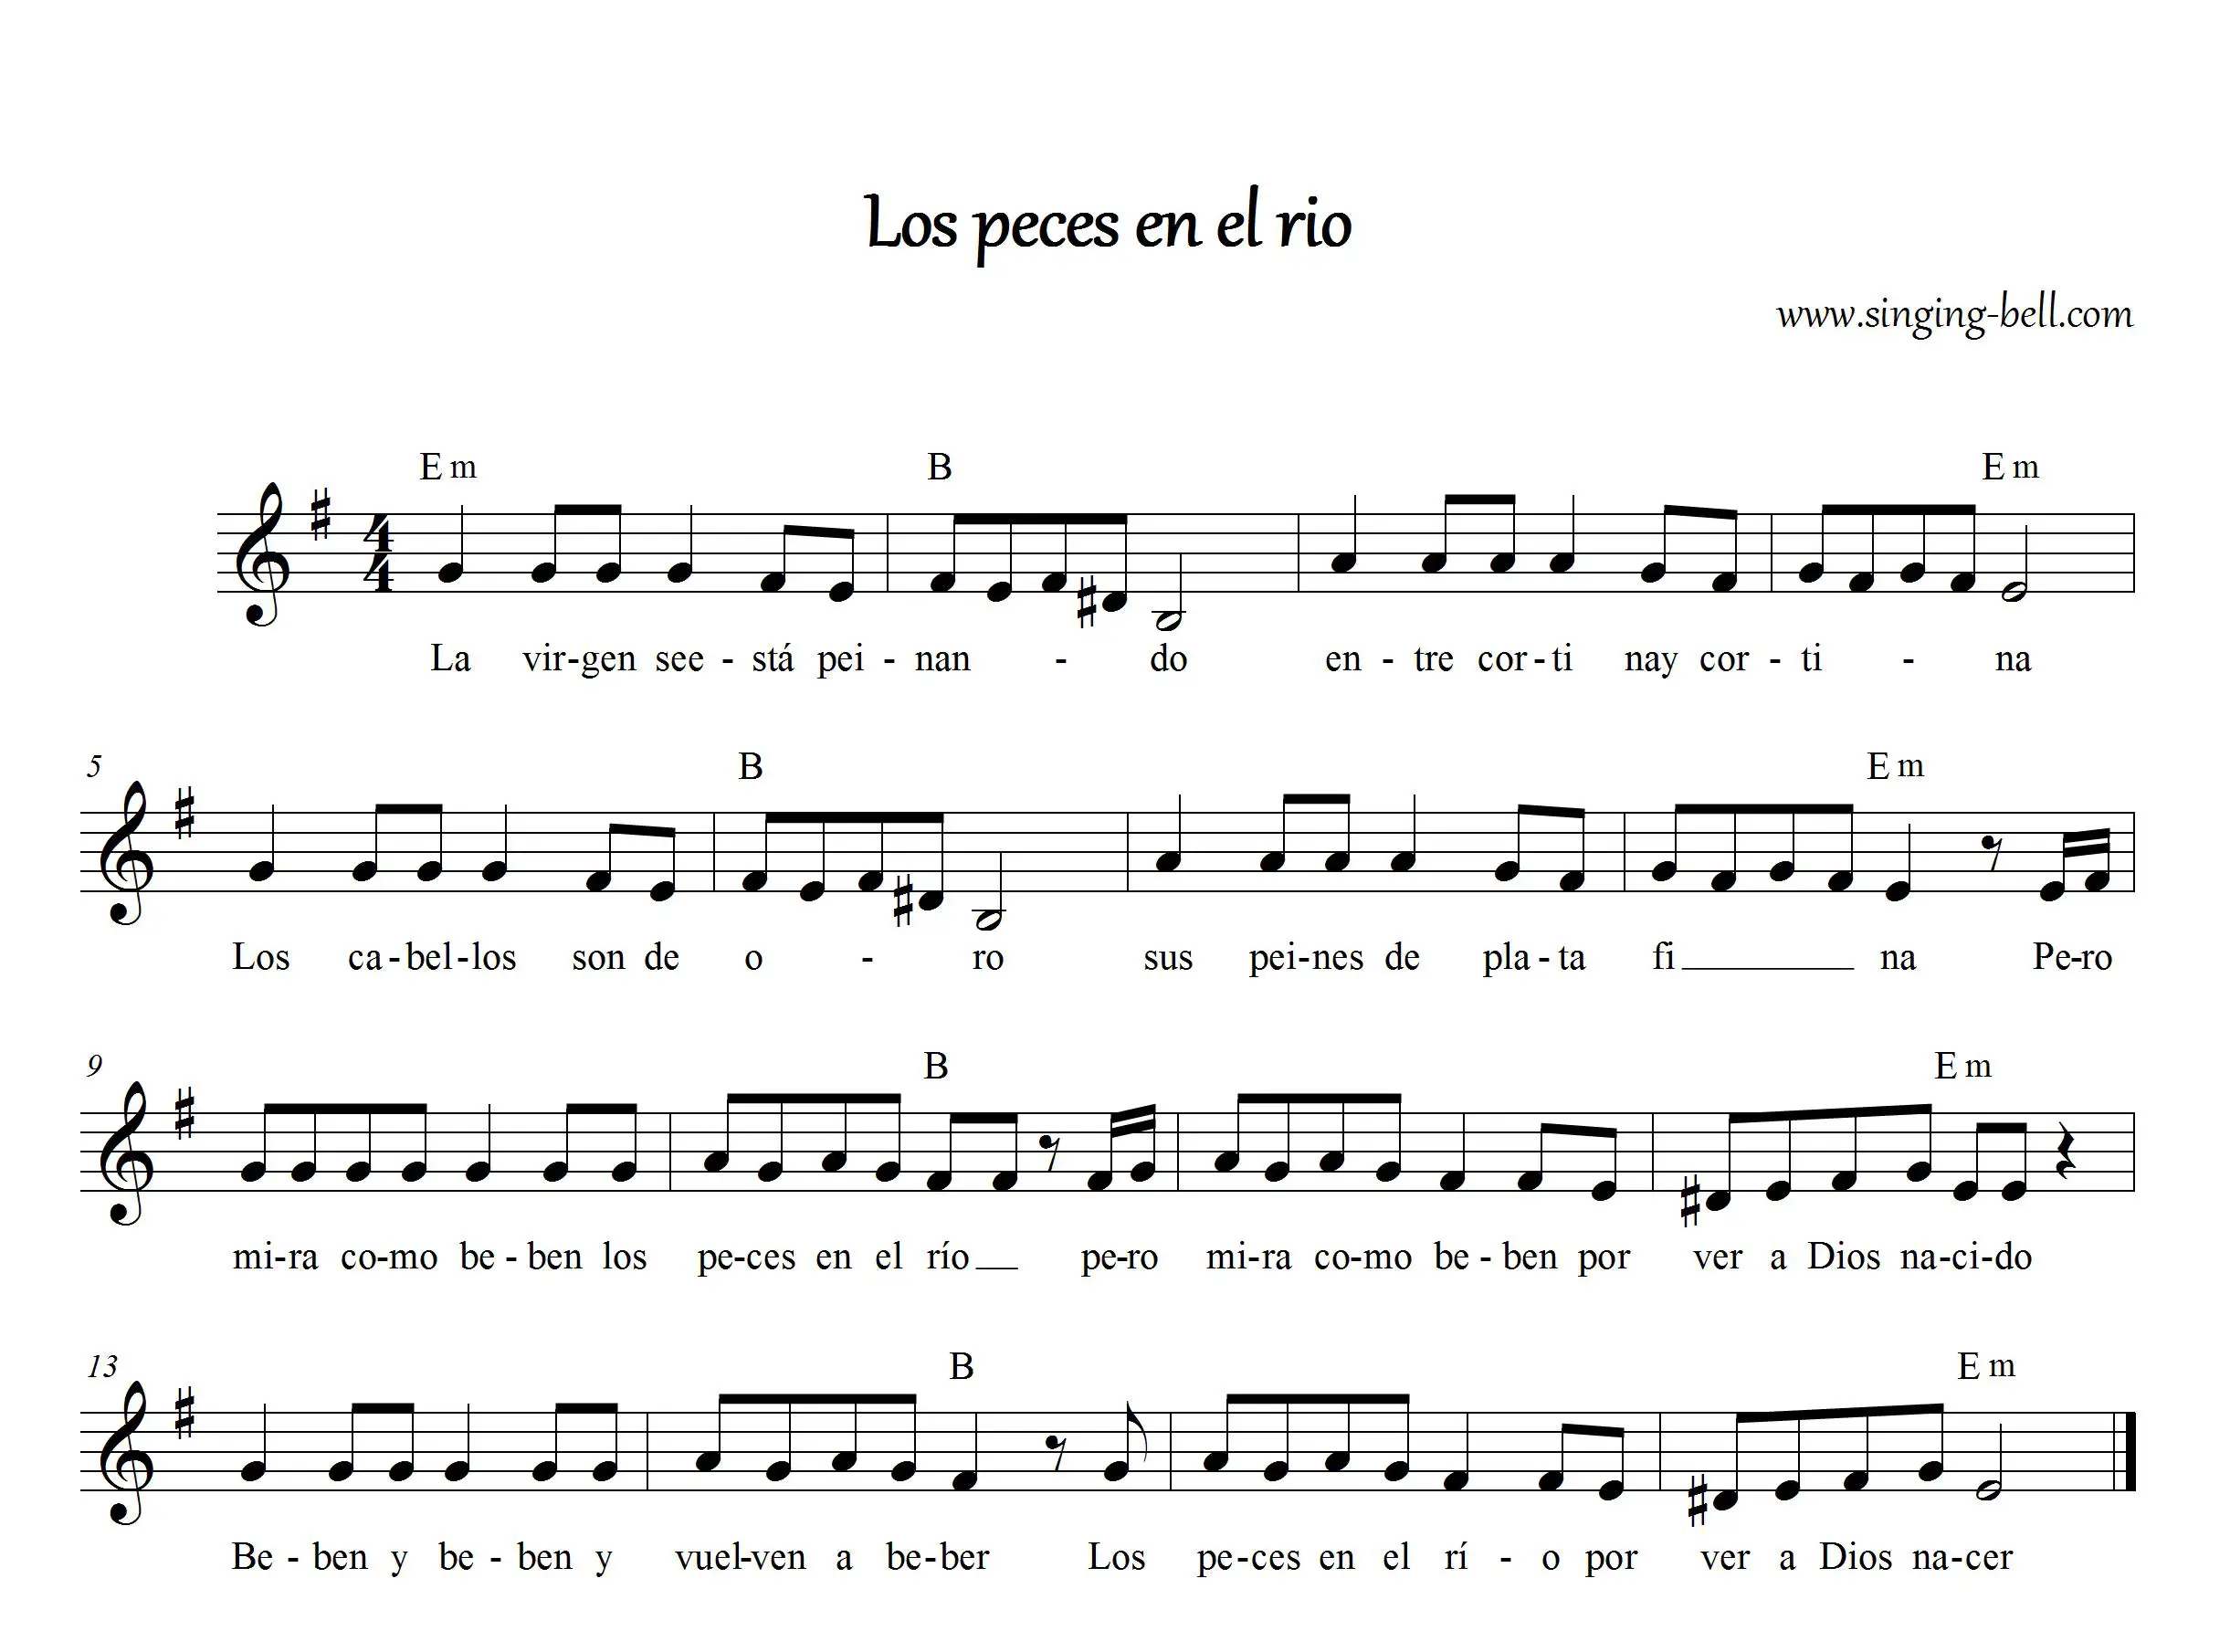 Los Peces en el Río" partitura musical.